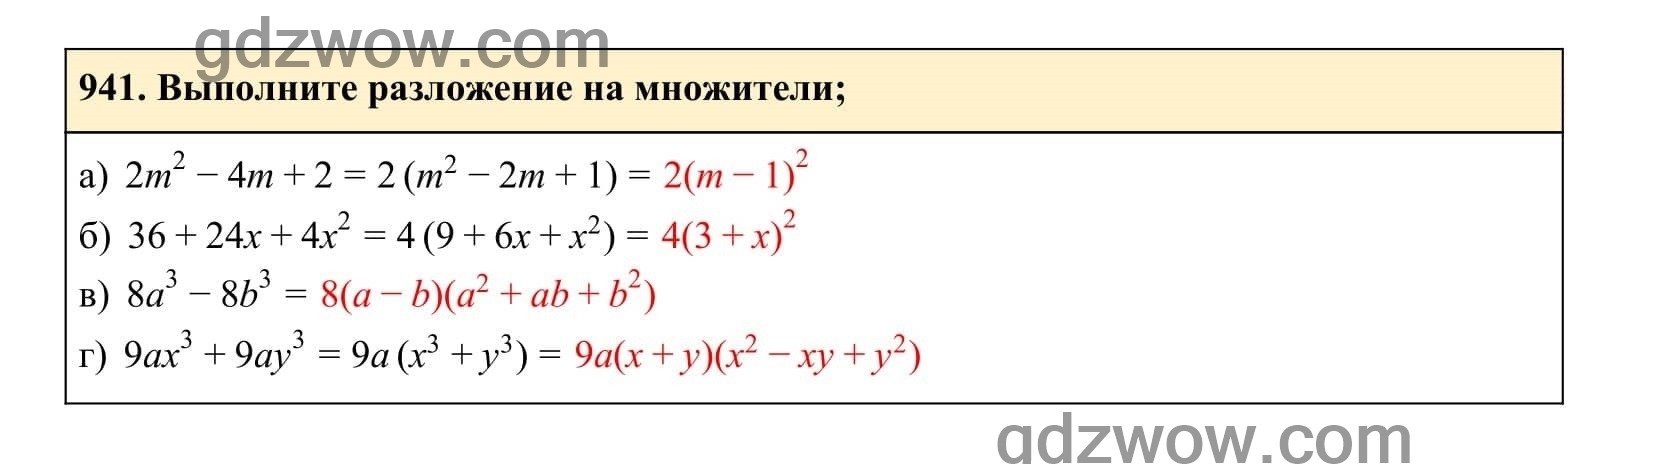 Упражнение 941 - ГДЗ по Алгебре 7 класс Учебник Макарычев (решебник) - GDZwow